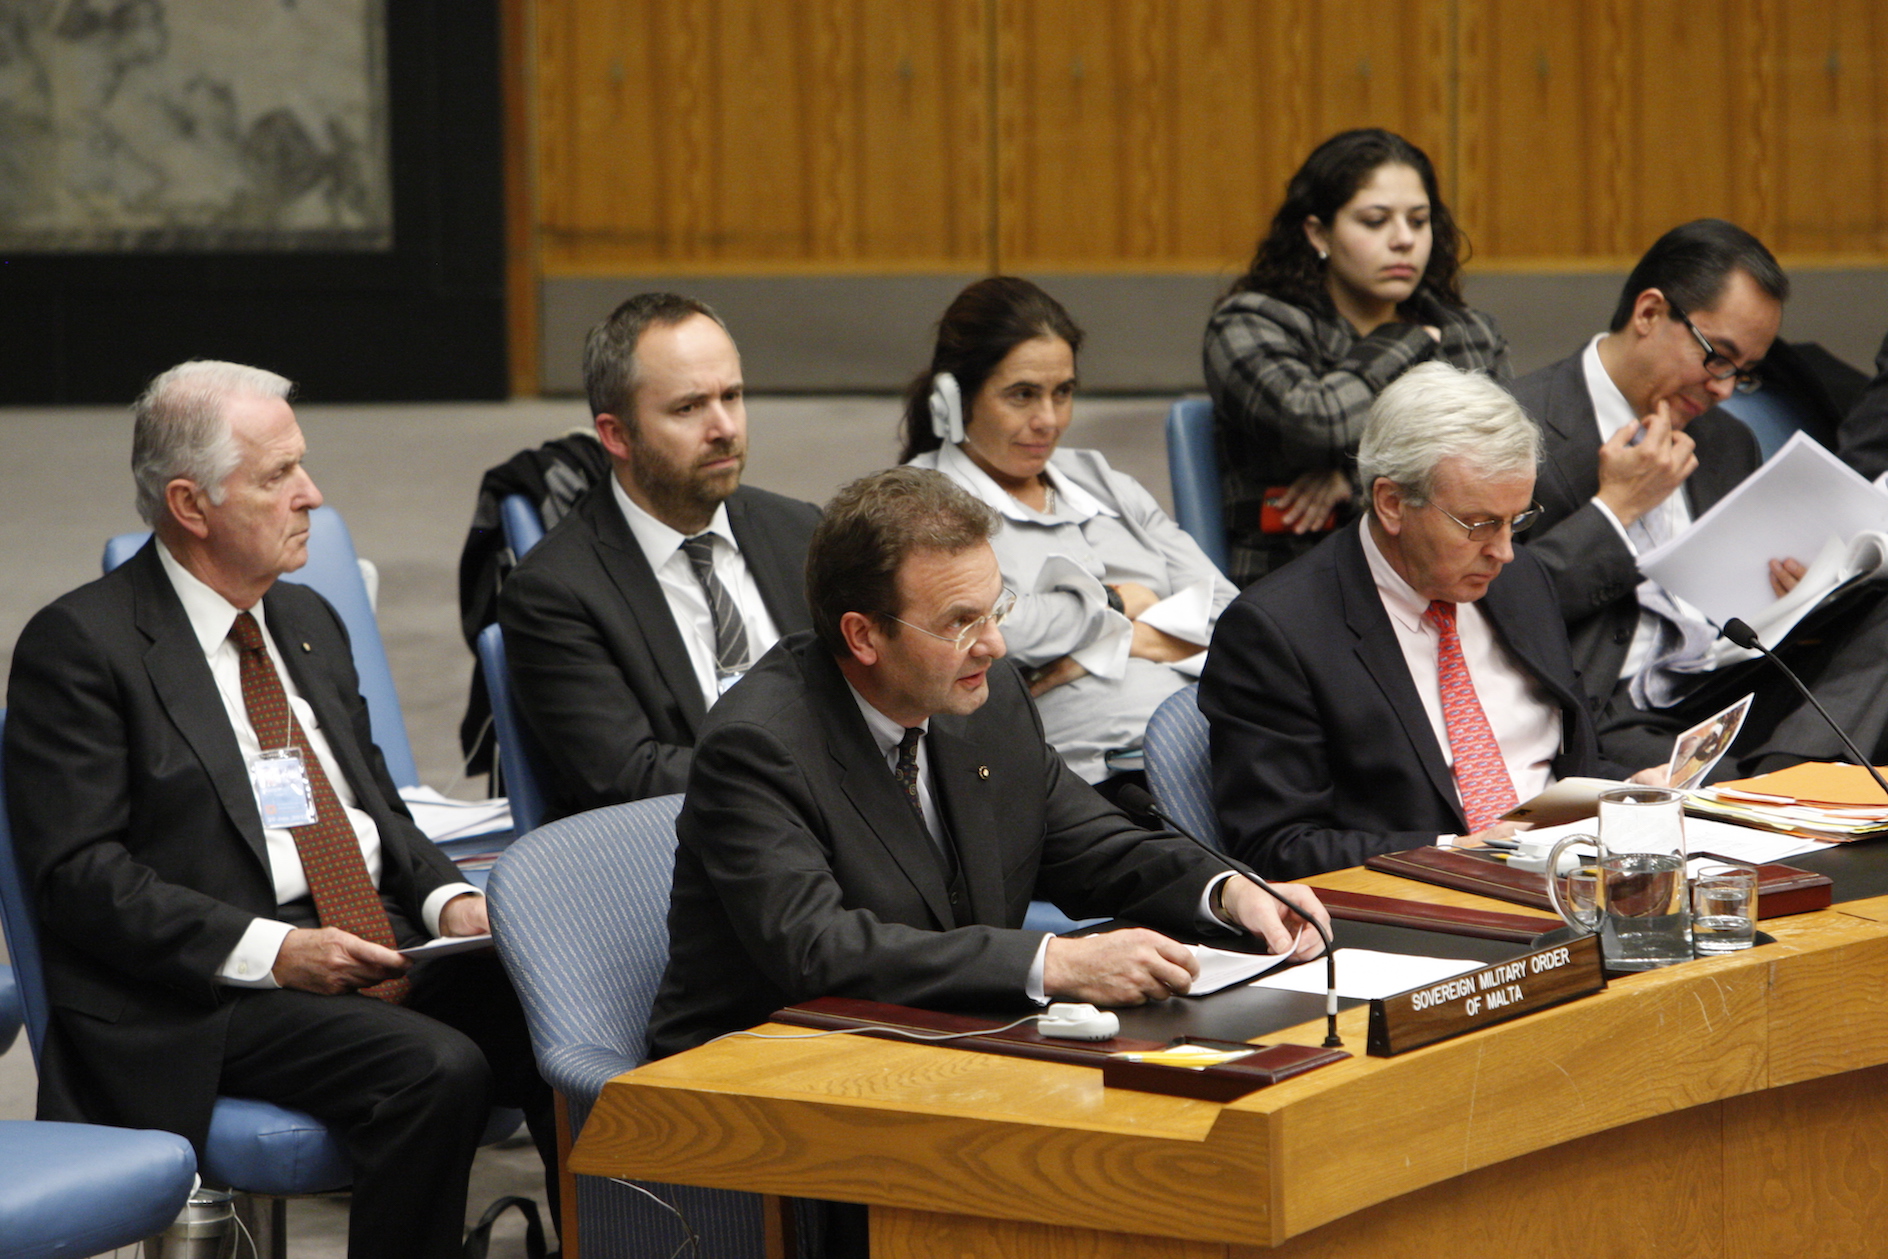 “Basta massacri di civili”: forte appello dell’Ordine davanti al consiglio di sicurezza dell’ONU